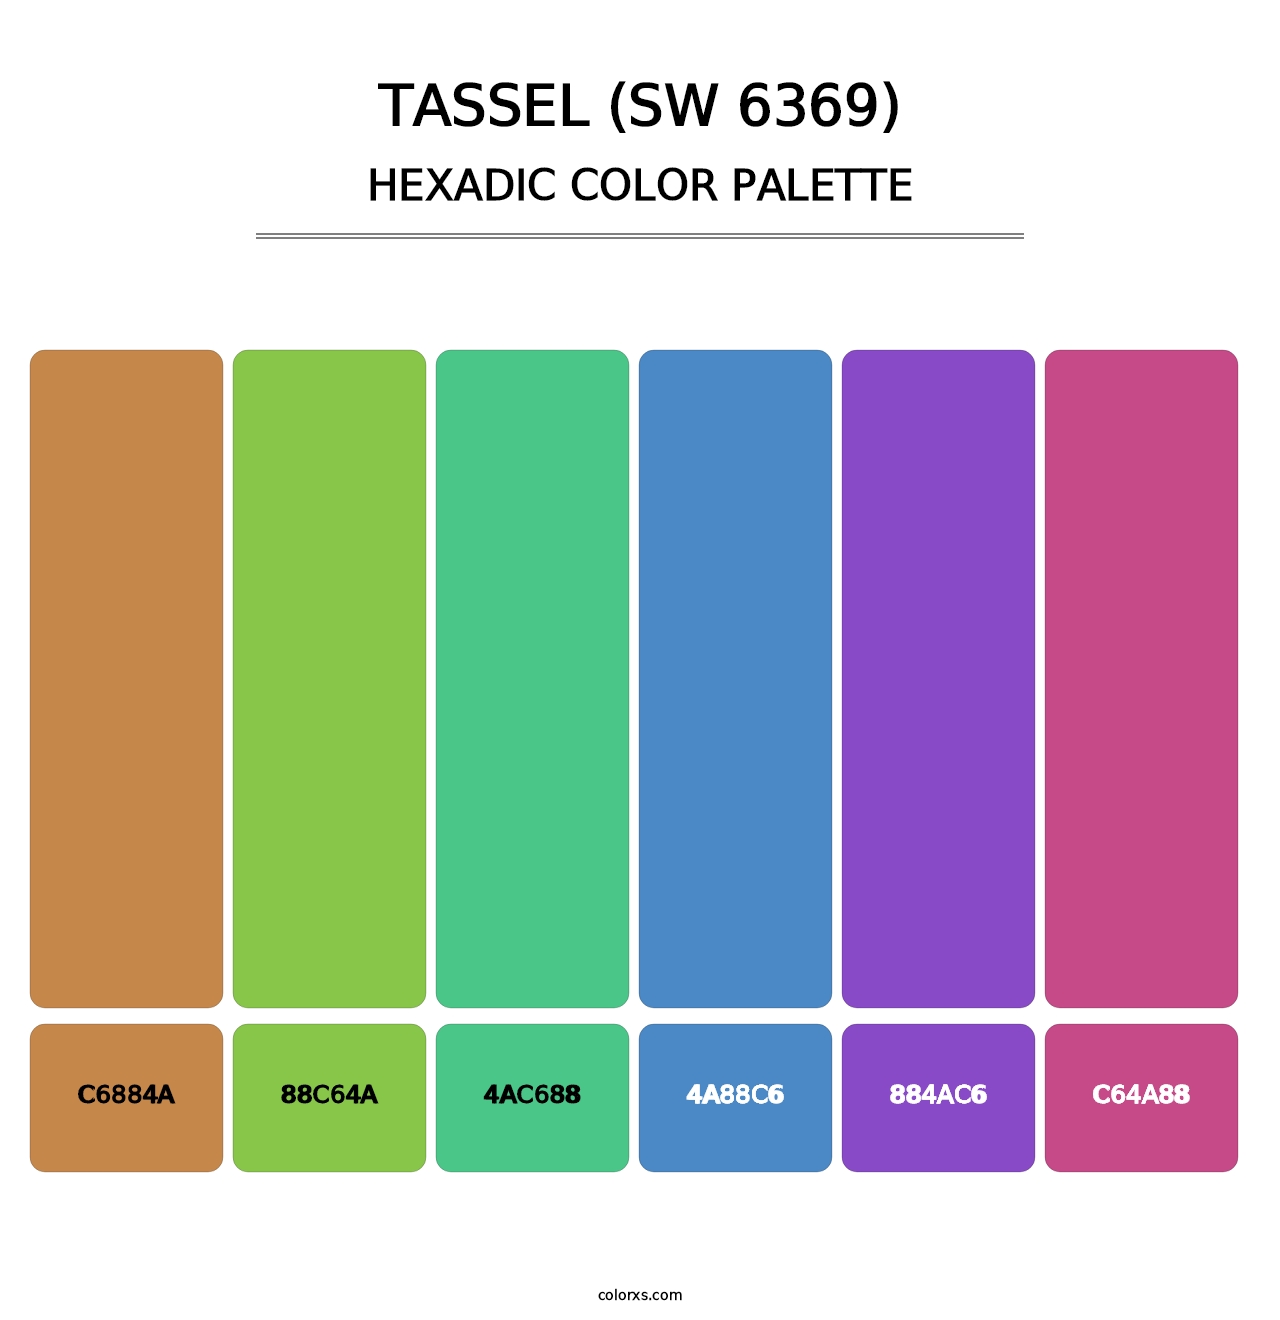 Tassel (SW 6369) - Hexadic Color Palette